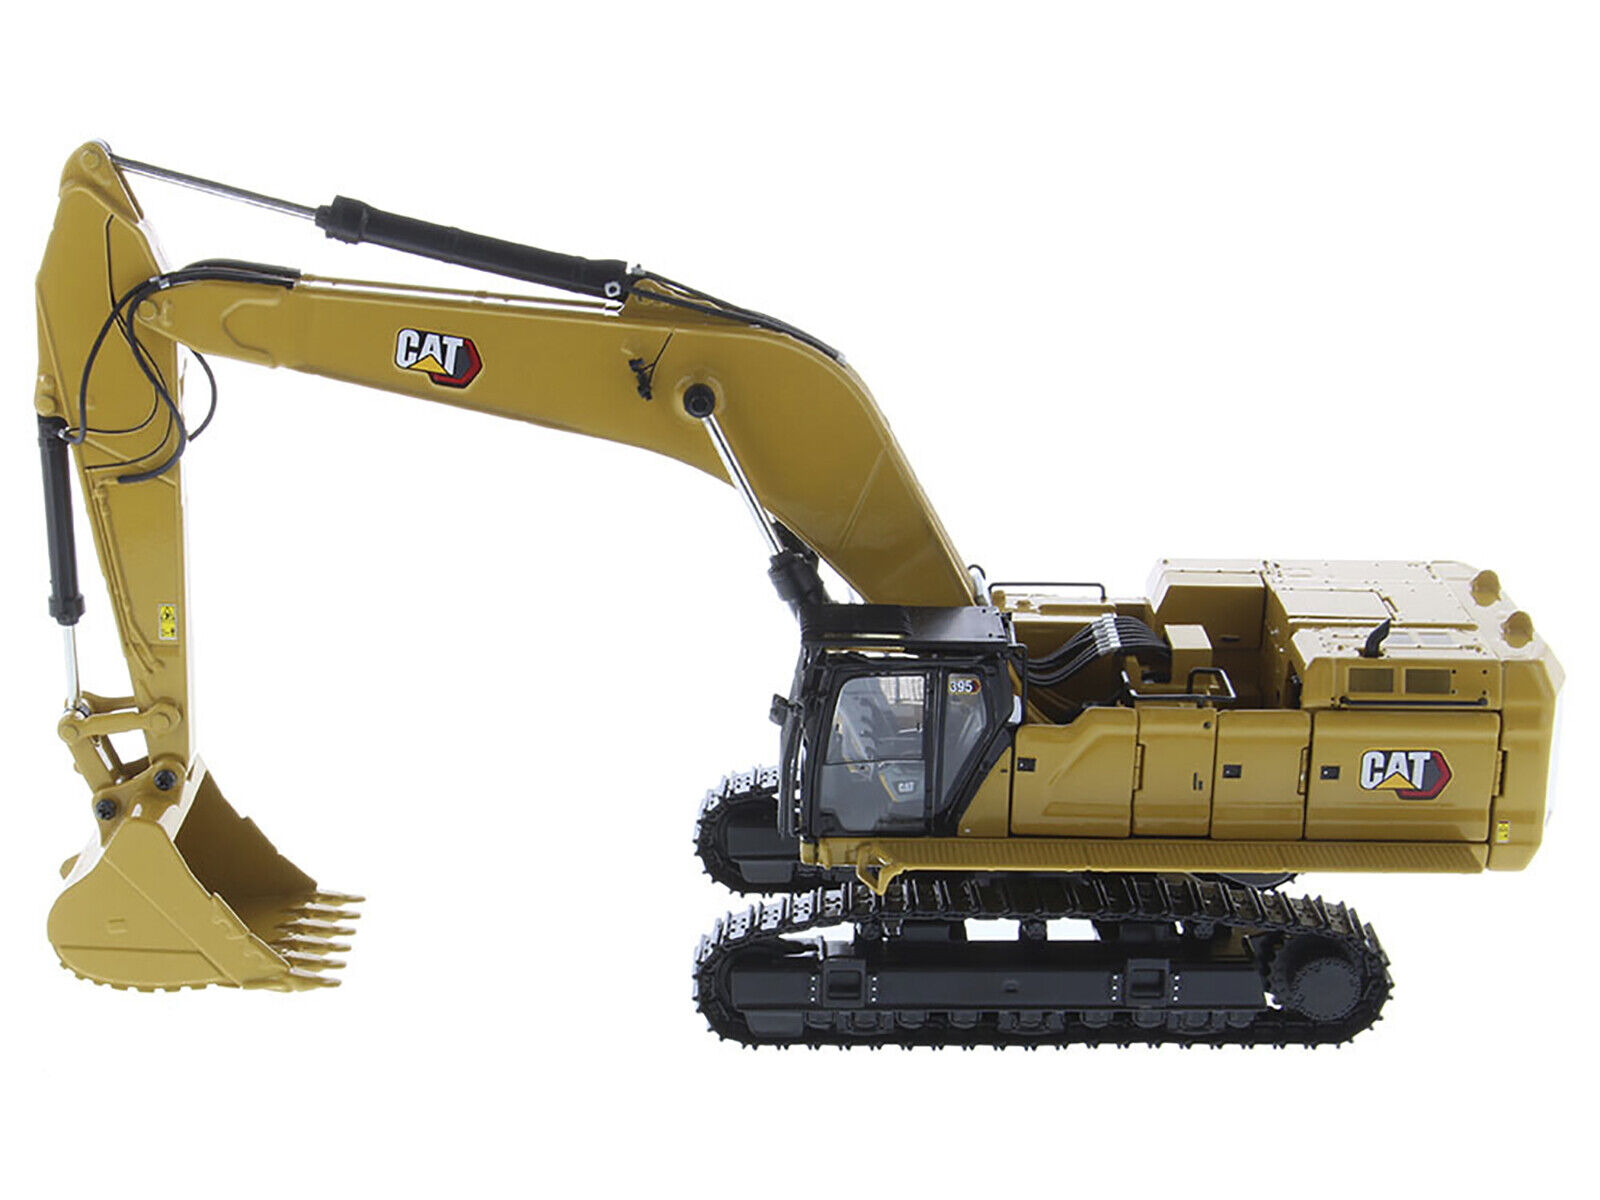 CAT Caterpillar 395 Next Generation Hydraulic Excavator (General Purpose